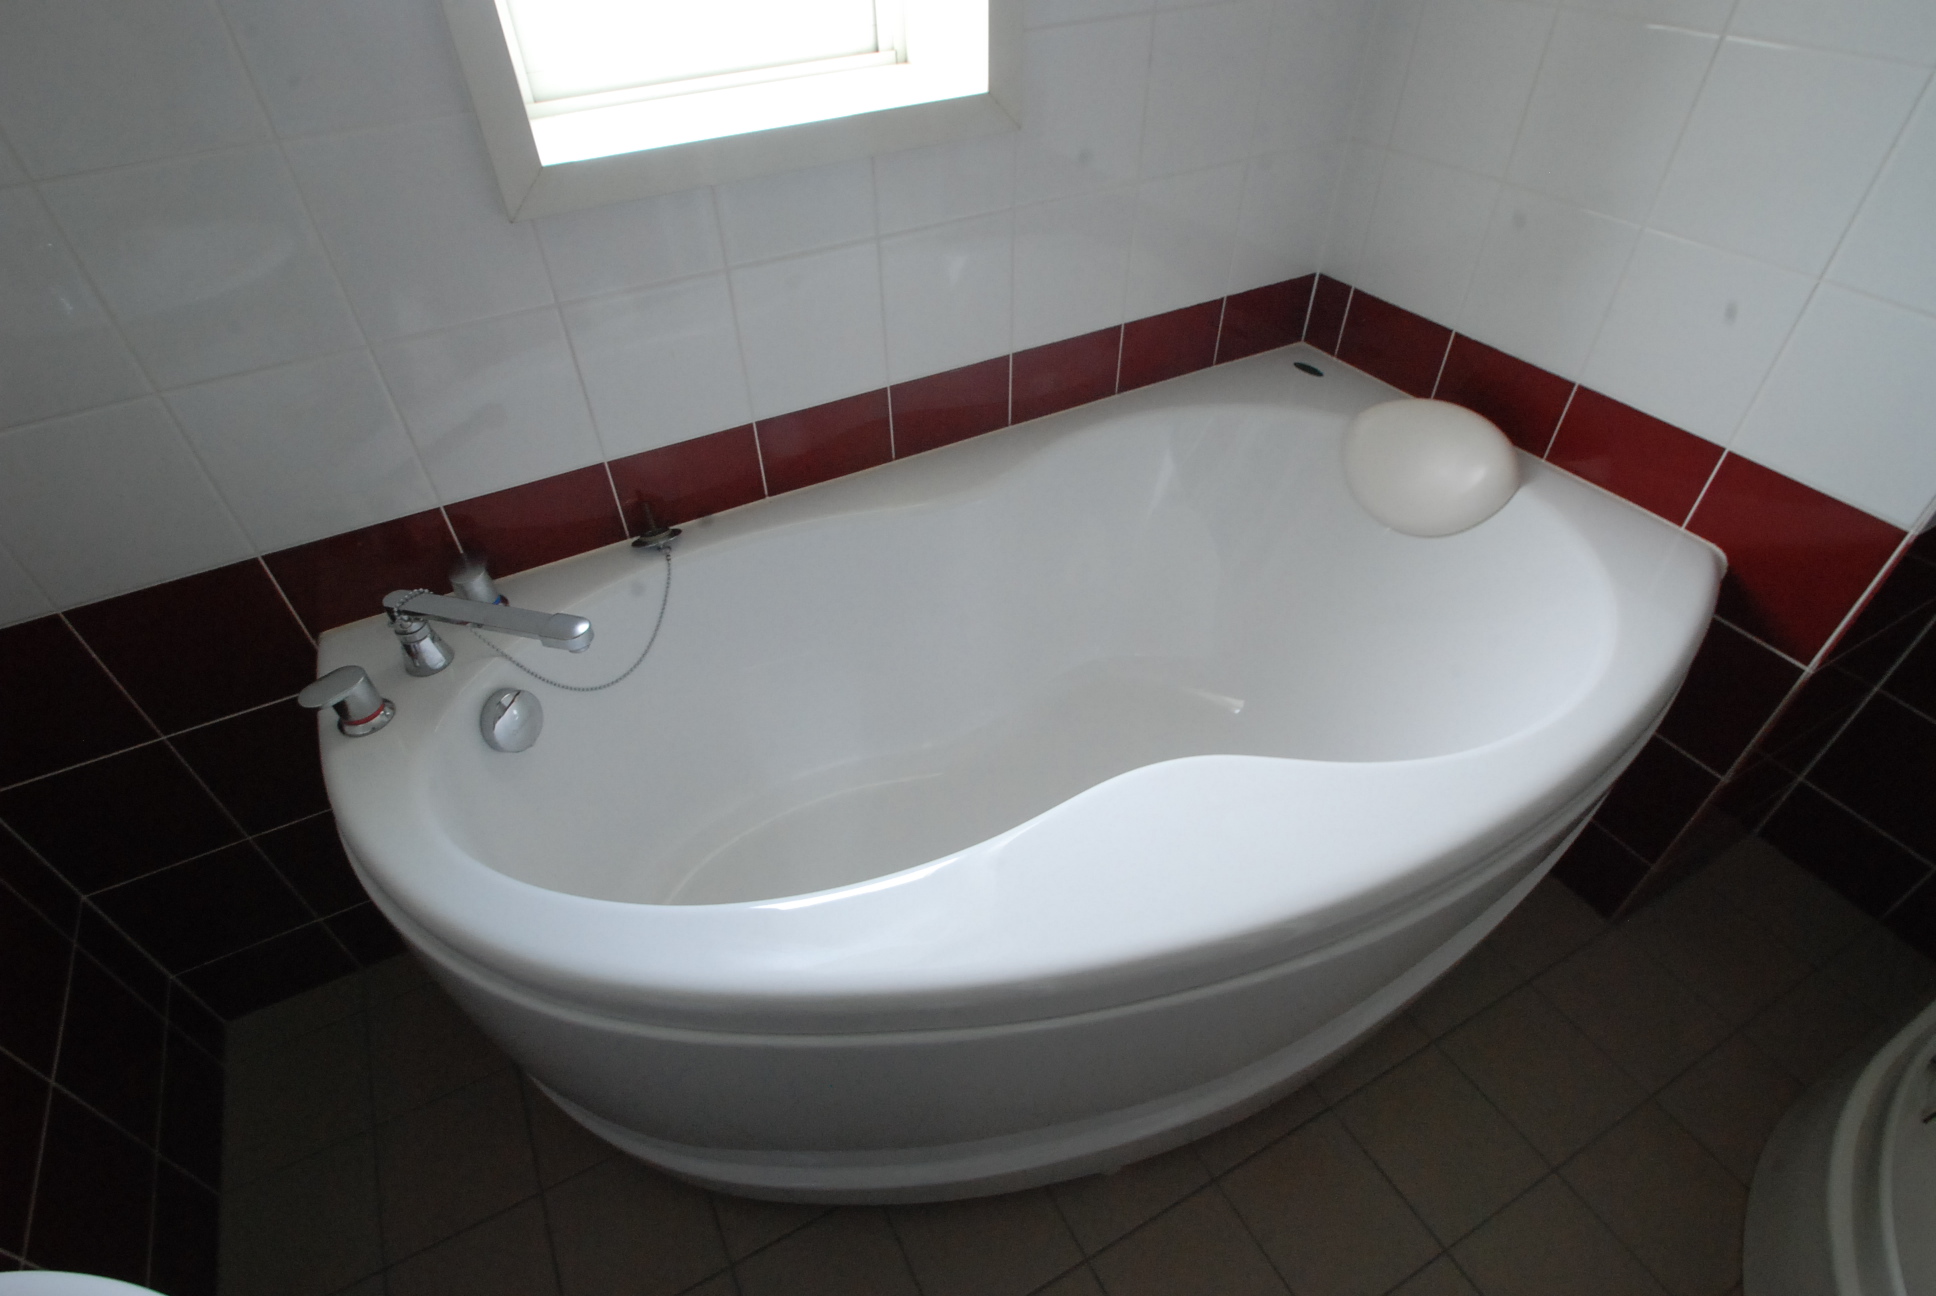 Bath. Stylish bathtub